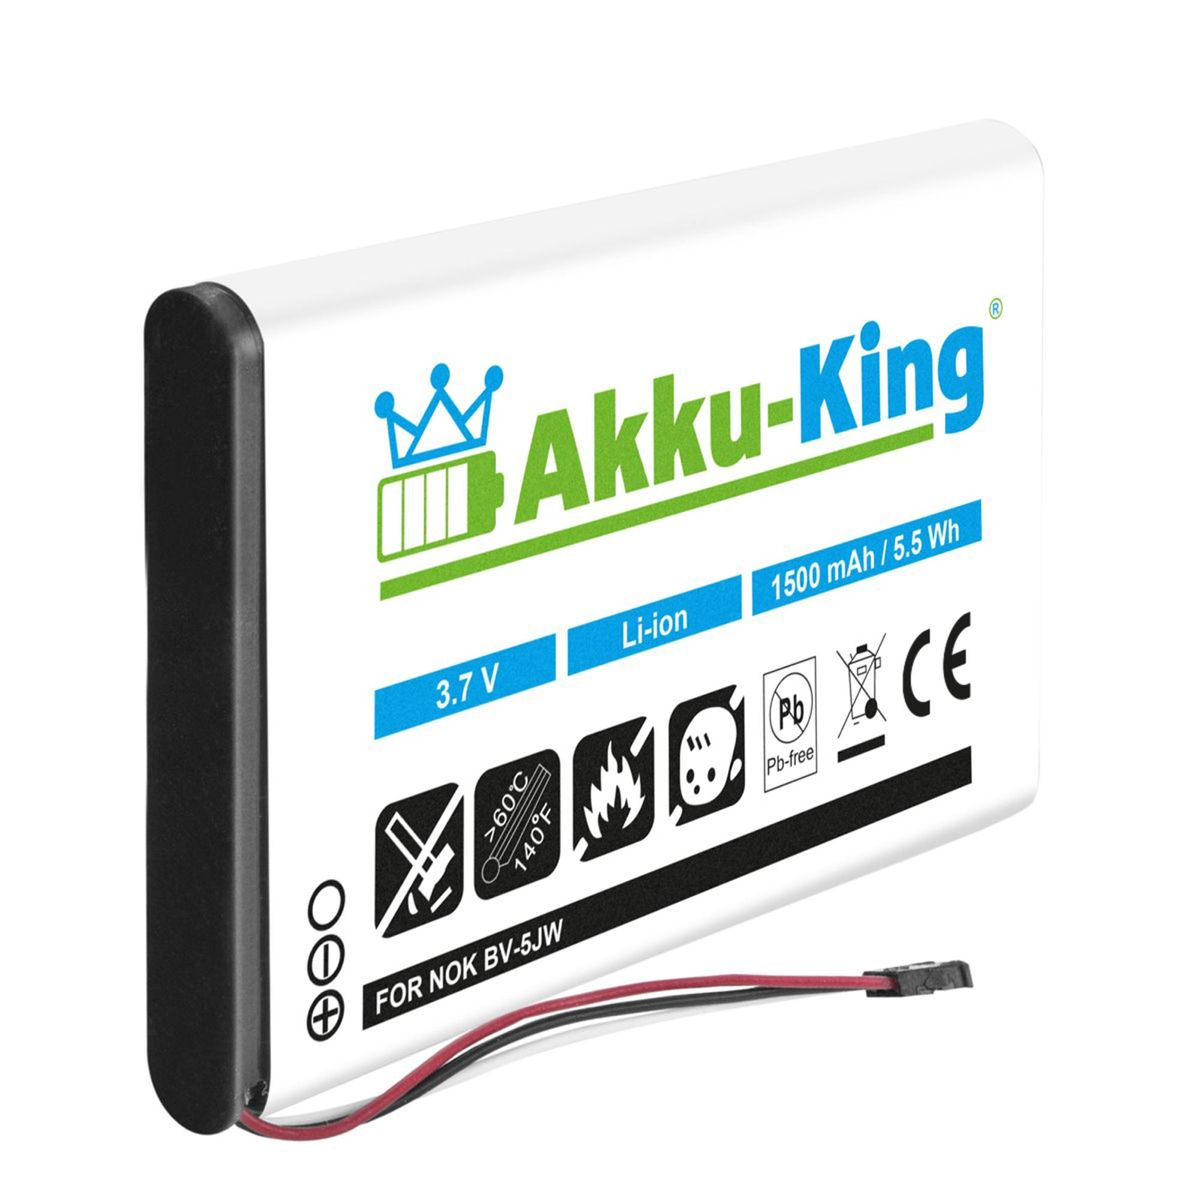 AKKU-KING Akku Li-Ion Handy-Akku, 3.8 Volt, BV-5JW Nokia kompatibel 1500mAh mit